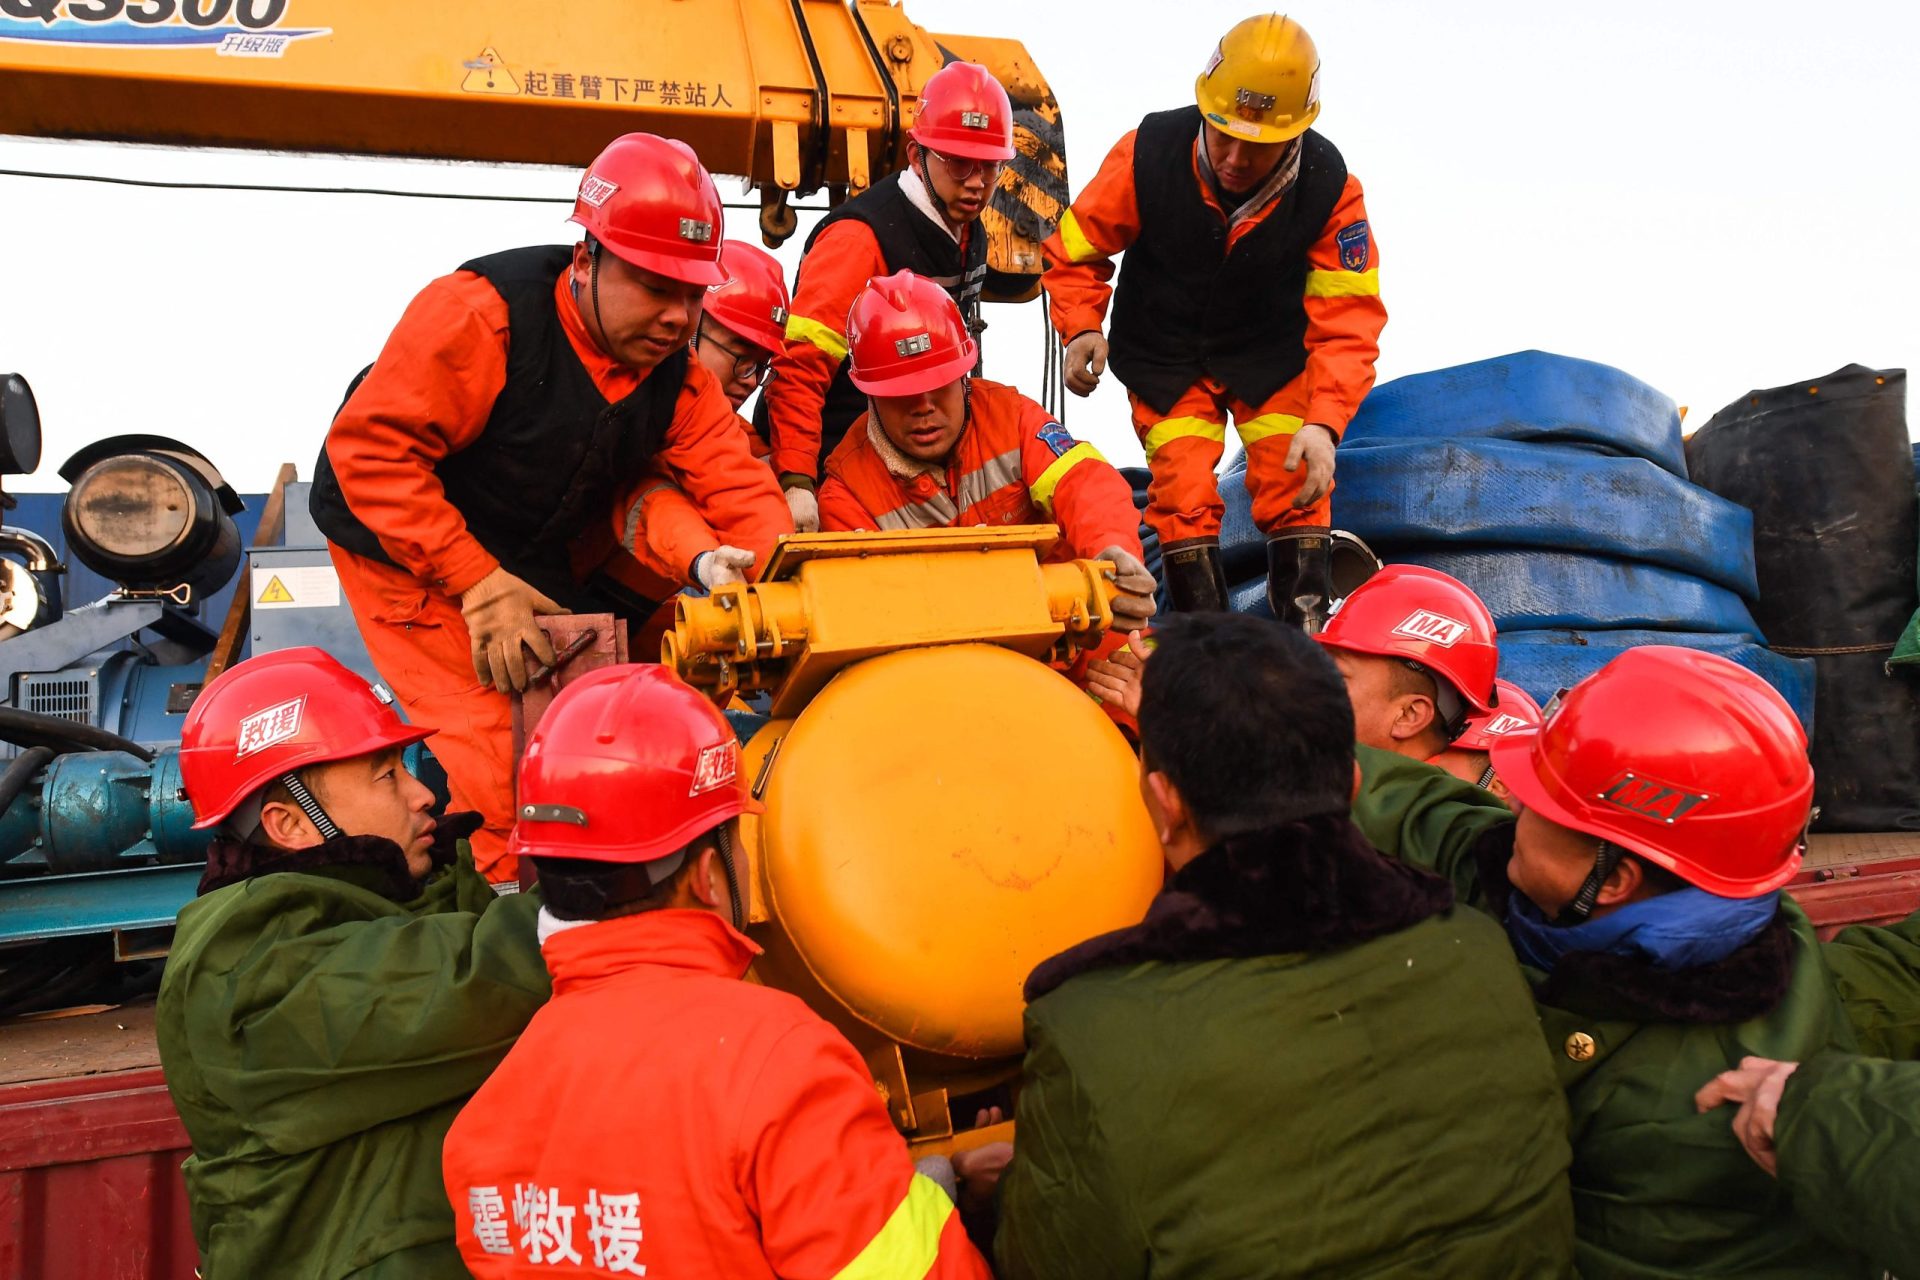 Resgatados 10 trabalhadores de uma mina onde estavam presos na China